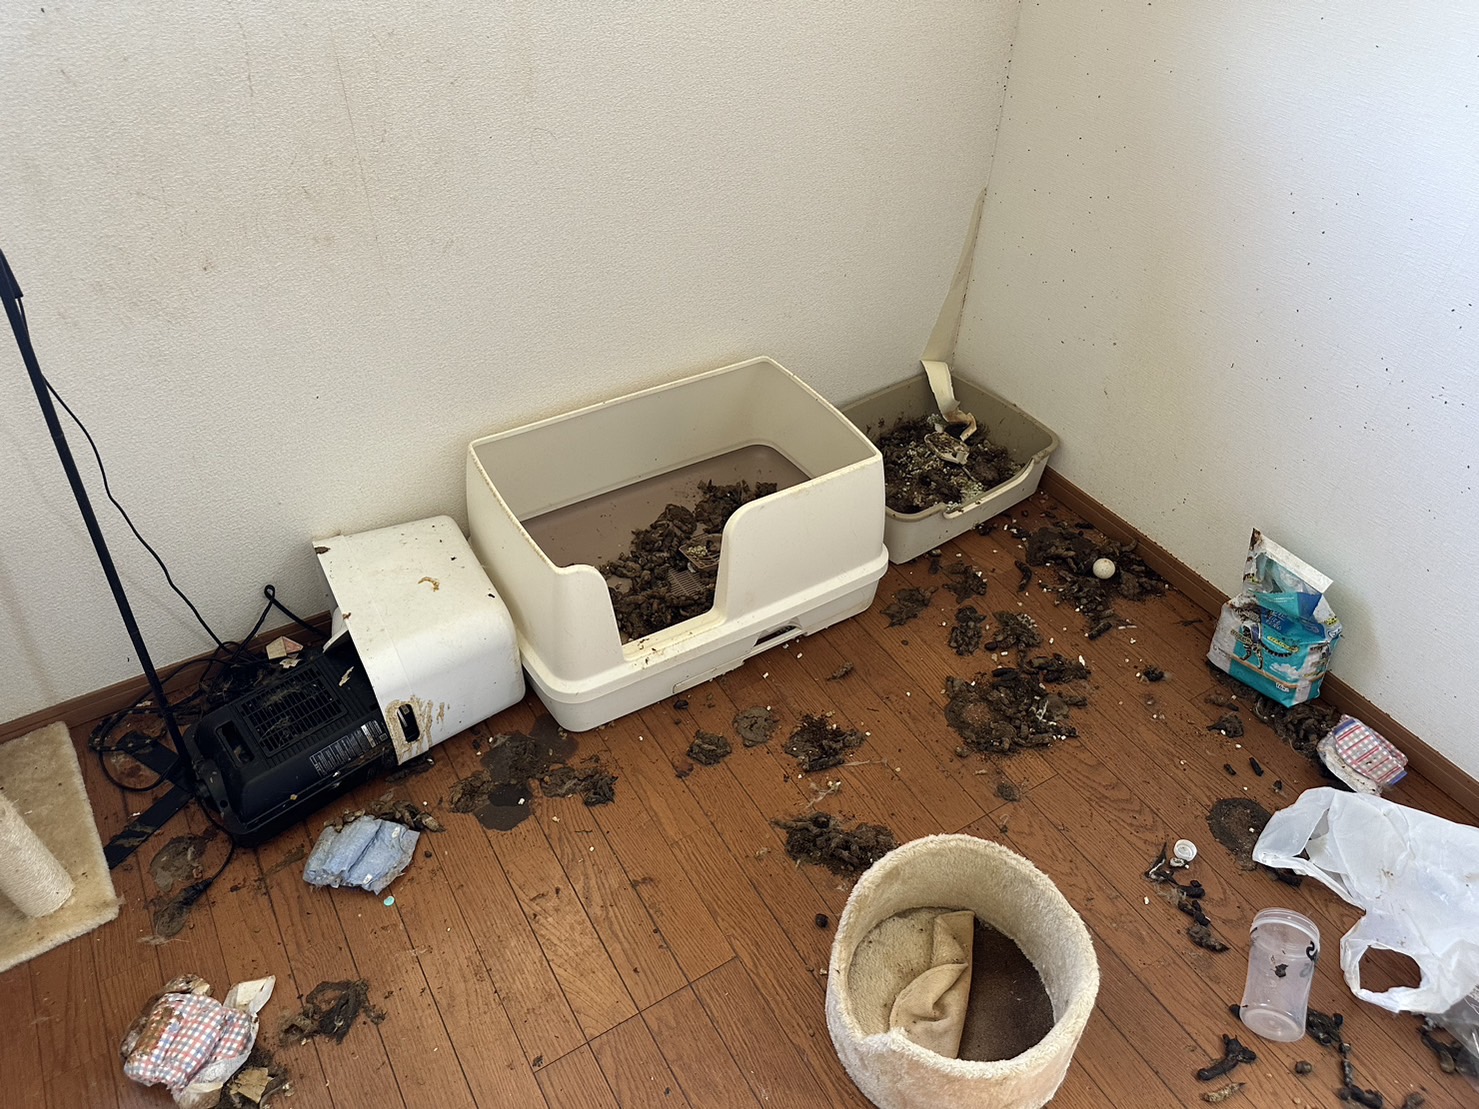 東京都江東区のゴミ屋敷の片付け、ペット汚れで悪臭を放つ居間